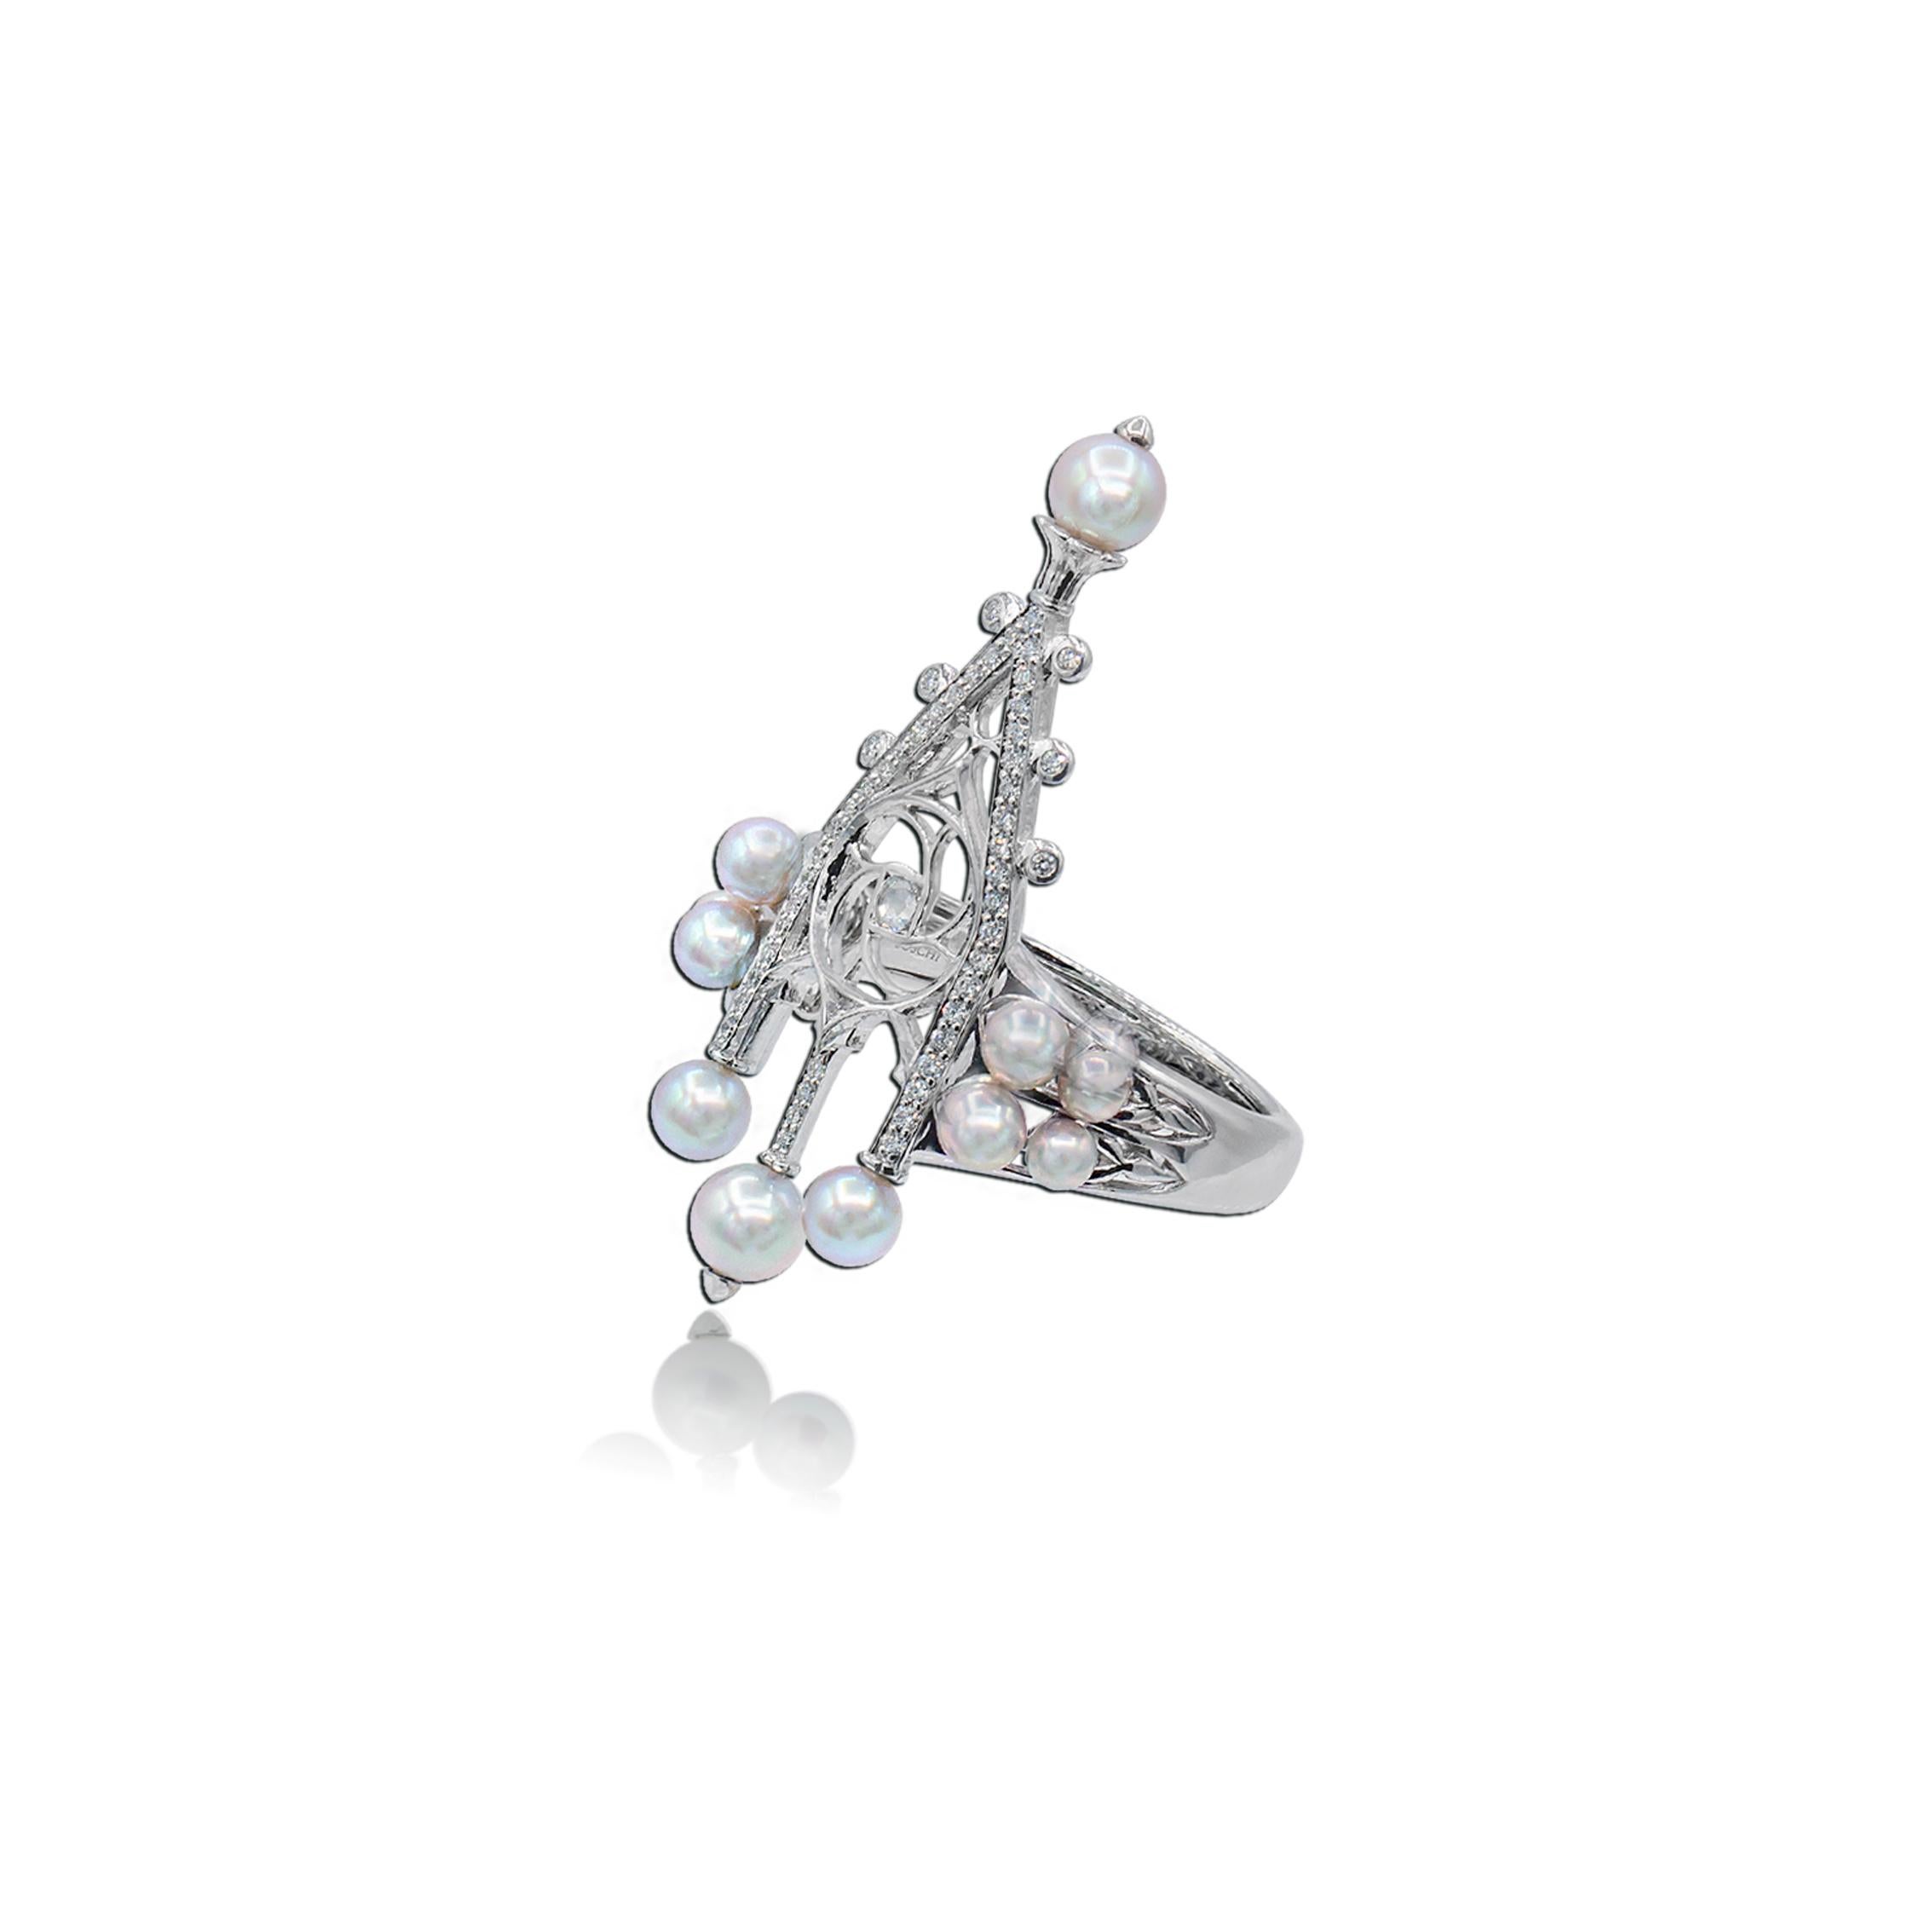 Weiße Diamanten (Rund- und Rosenschliff) 0,14 ct, Baby Silber/Blaue Akoya Perlen 12 Stück (von 2,5 bis 4,5 mm)                                                              

Der Glass Pinnacle Ring ist von der gotischen Architektur des Mailänder